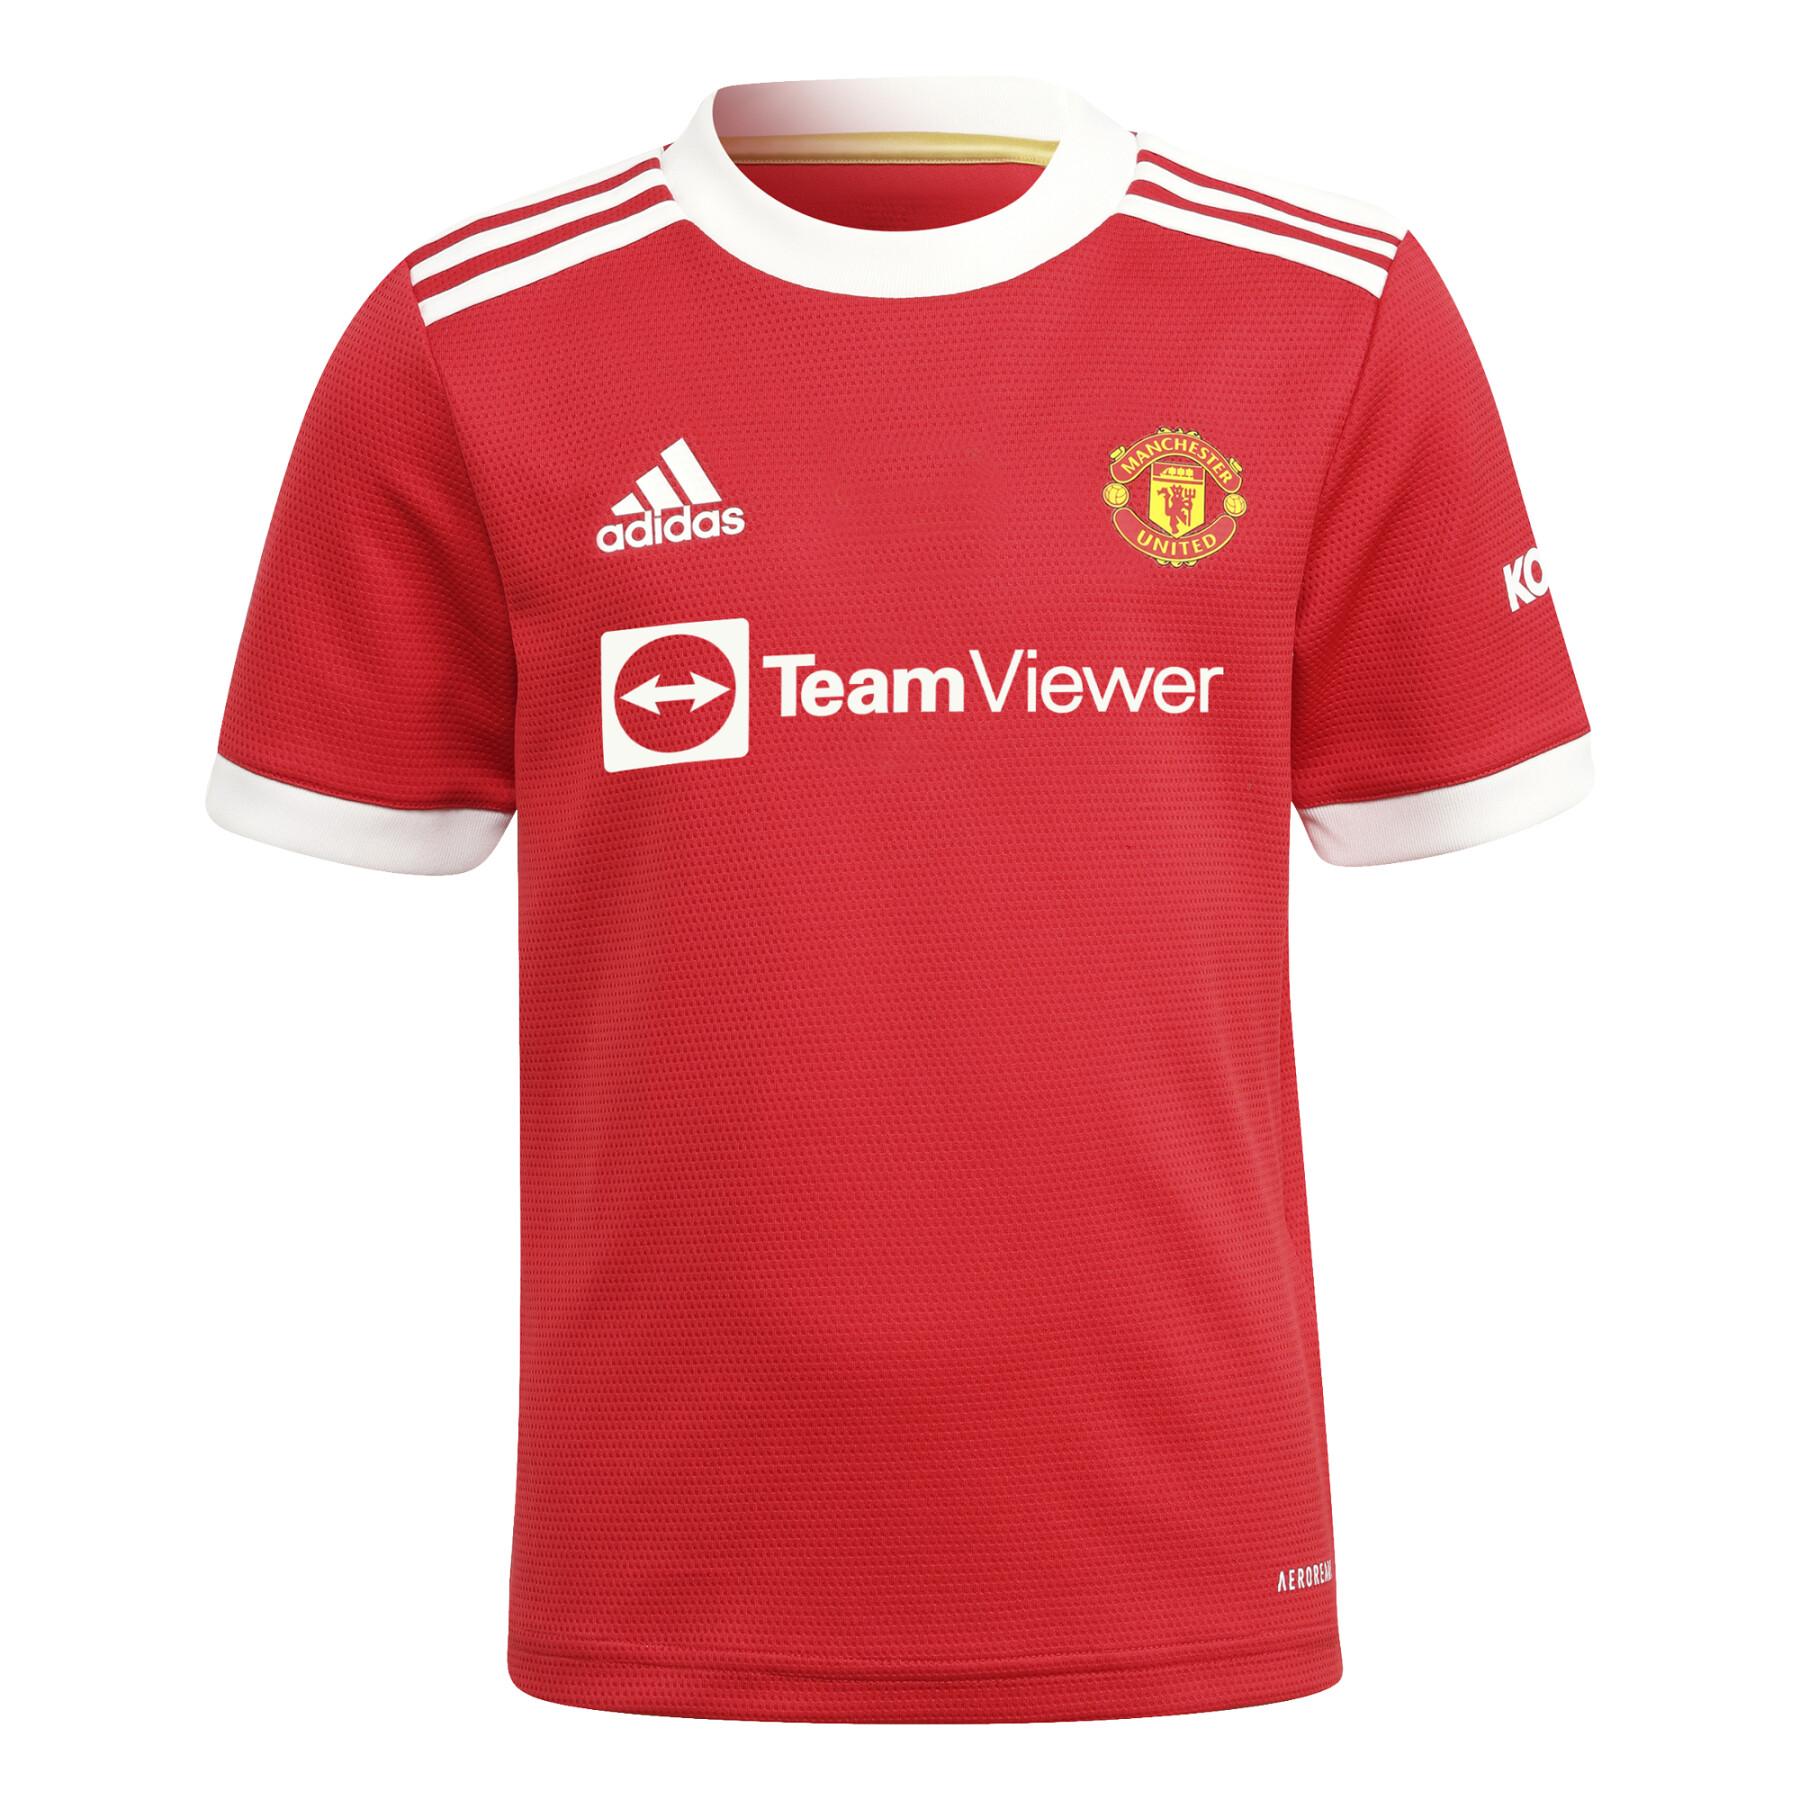 Mini home kit Manchester United 2021/22 - Premier League - Teams - Kids